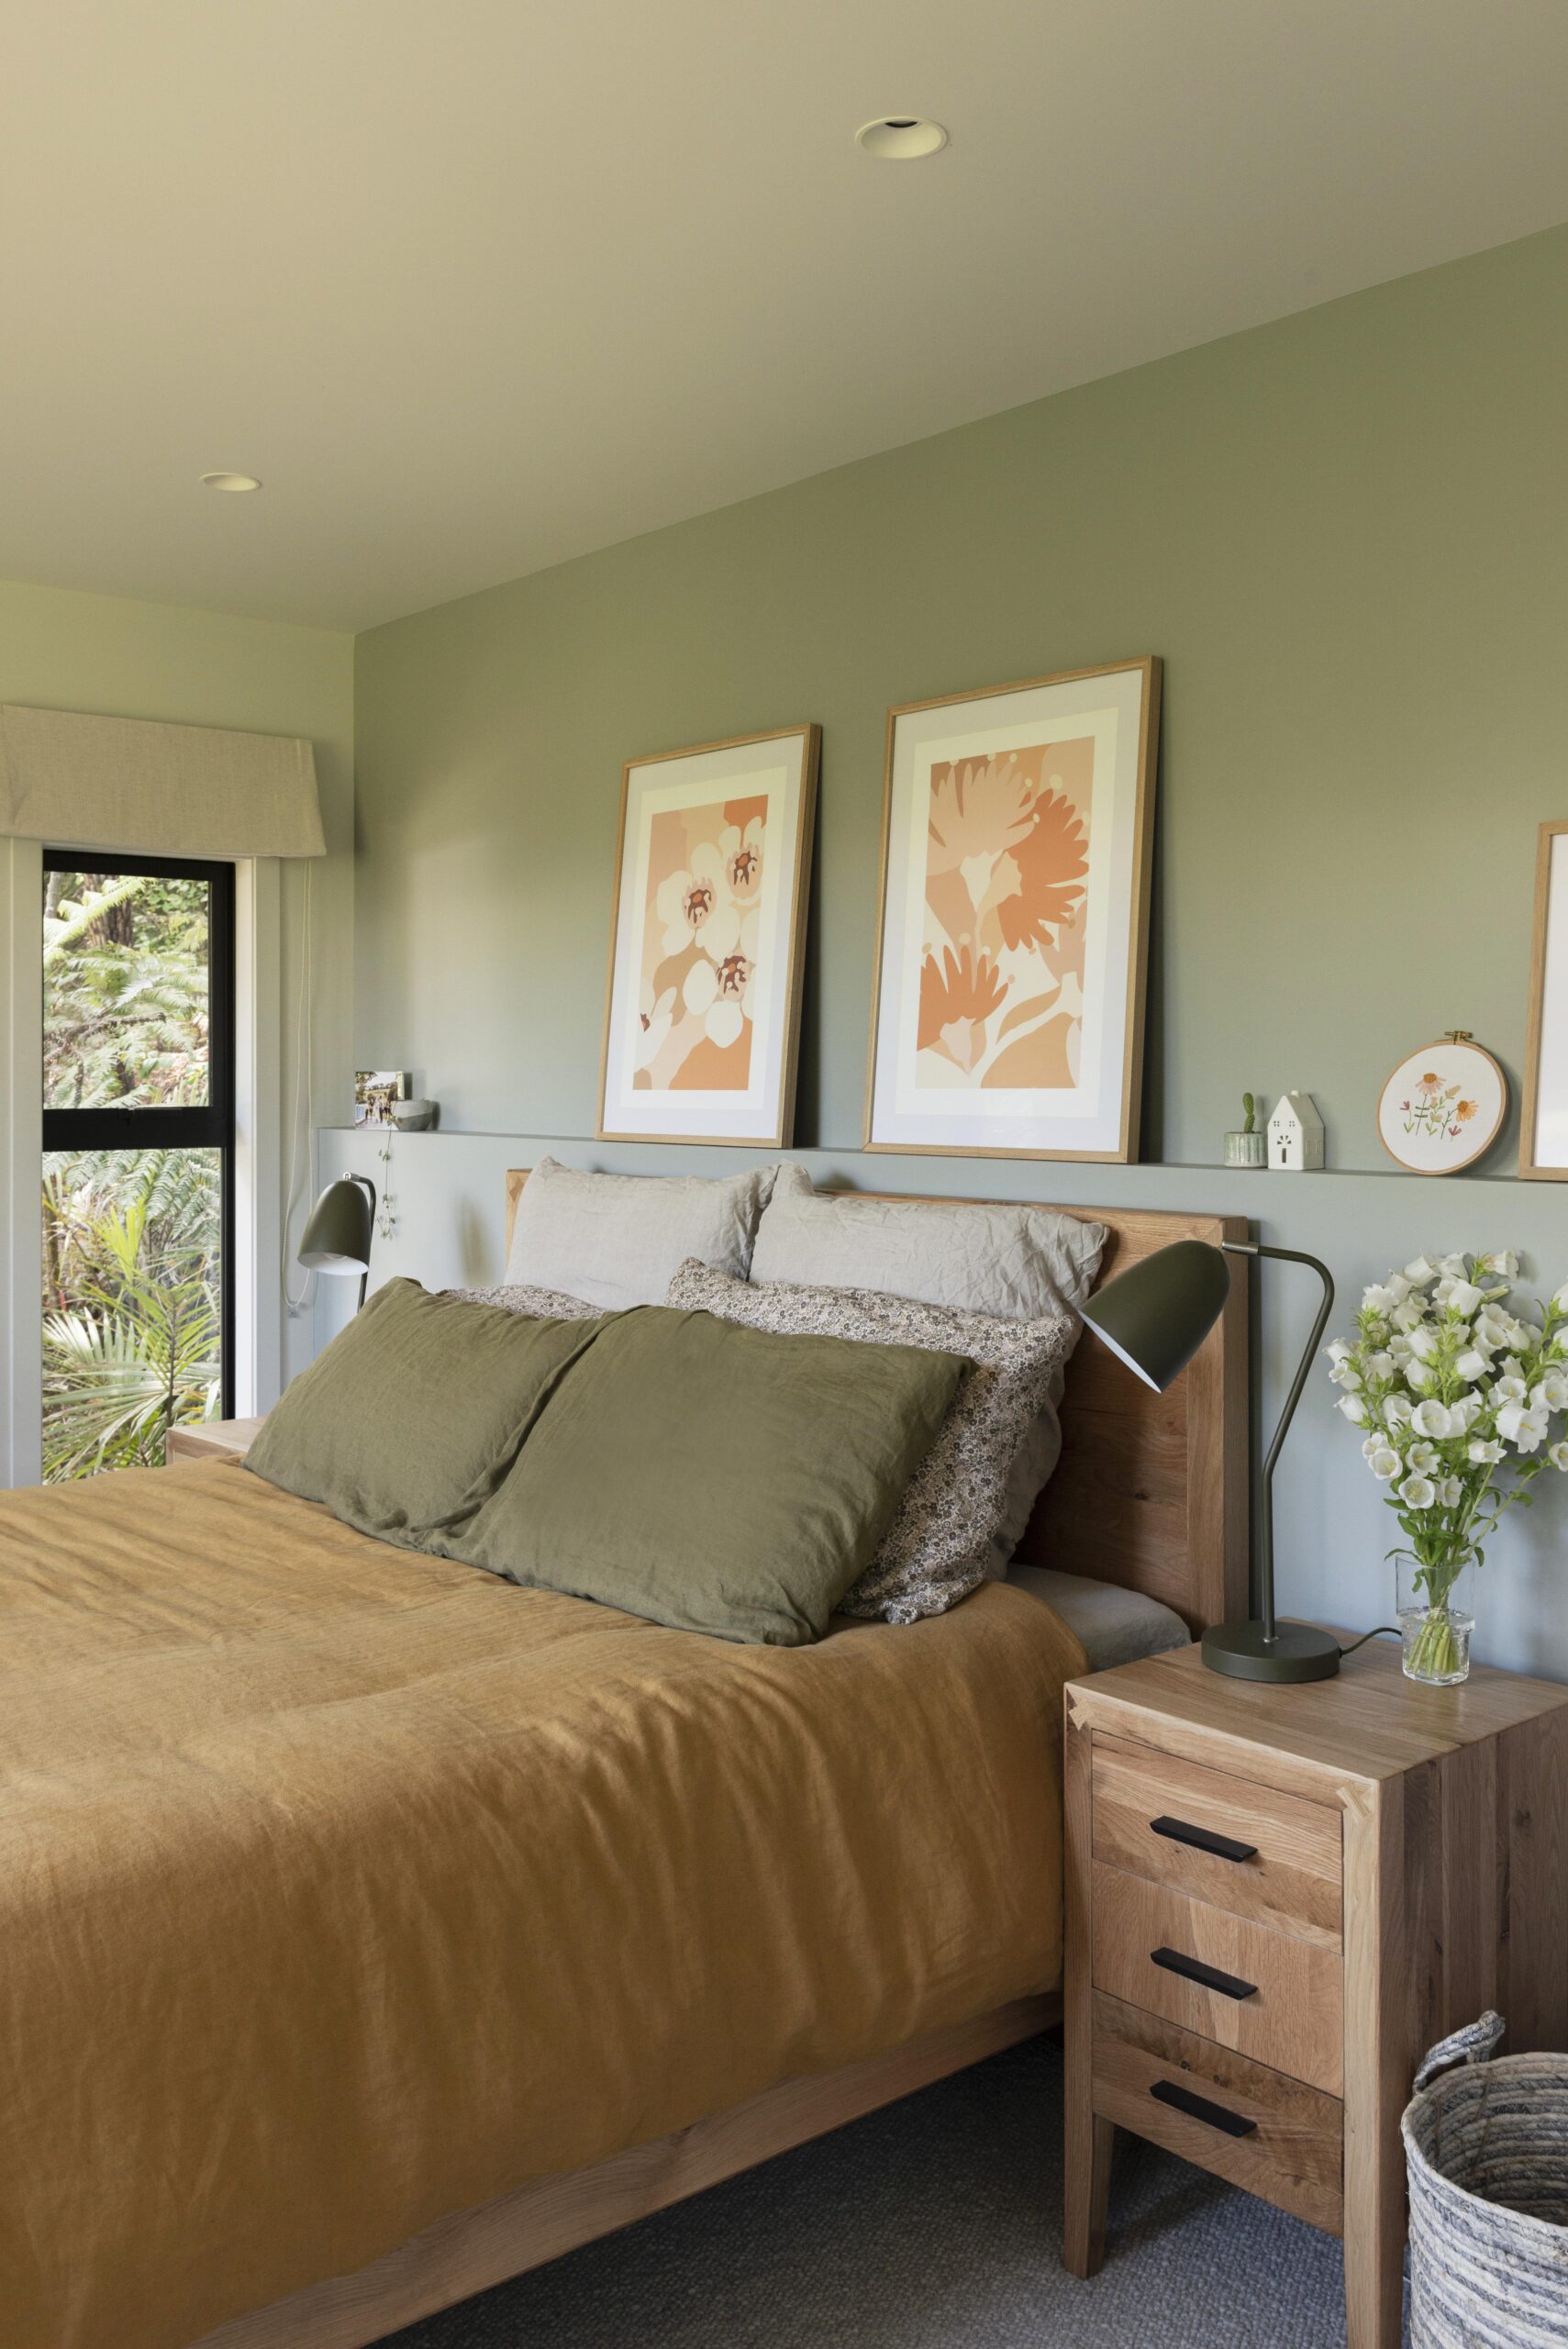 A bedroom with an inbuilt shelf headboard, artwork along it, green walls, rust bed linen